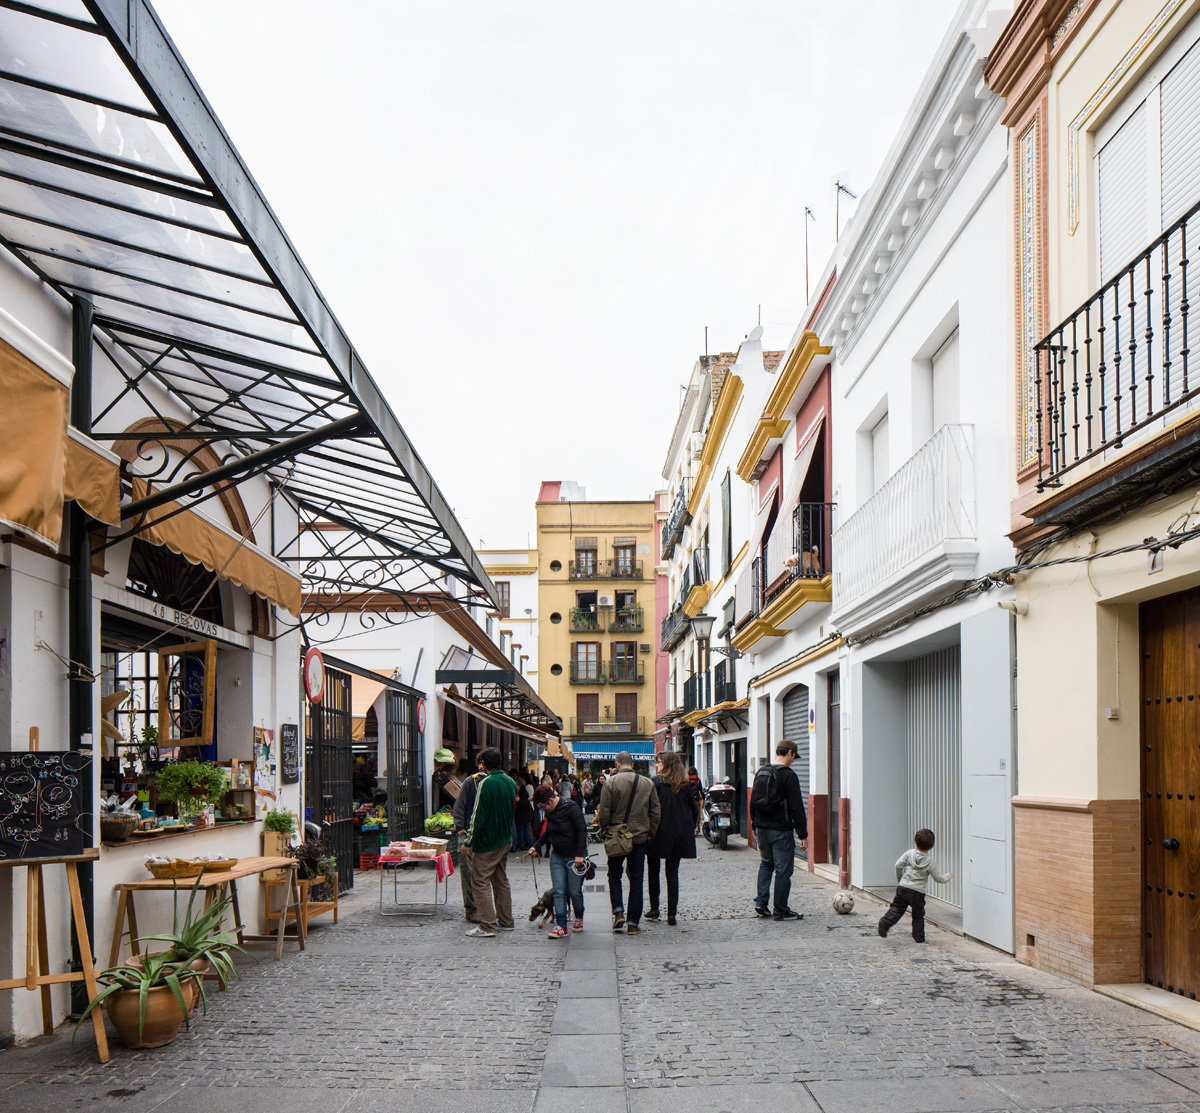 Casa en mercado. Sevilla